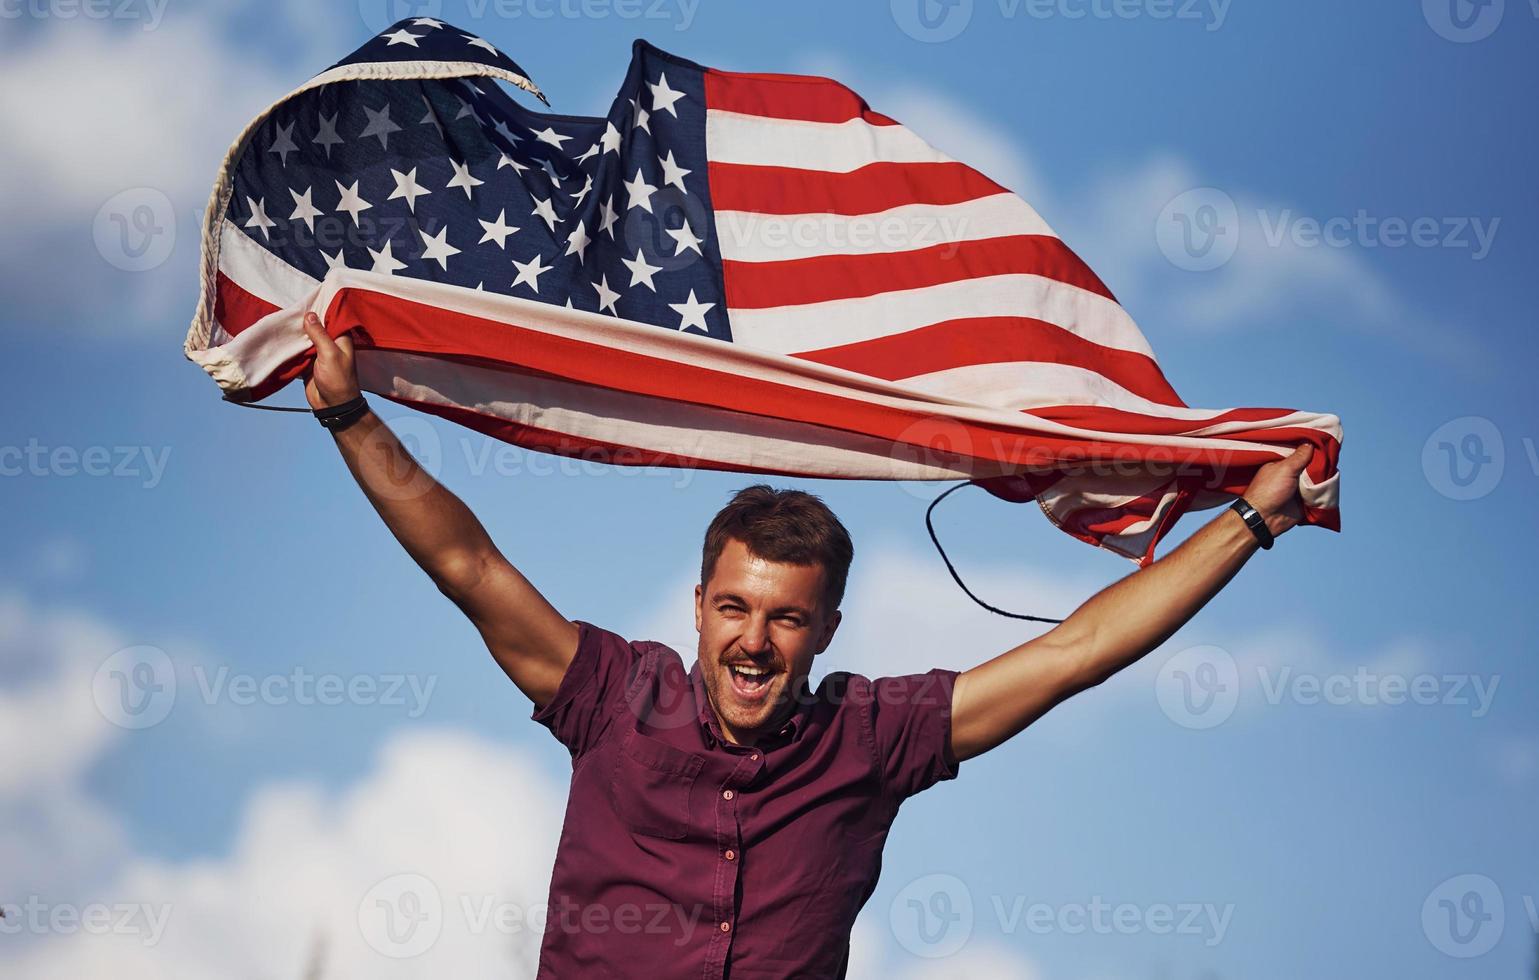 homme heureux patriotique agitant le drapeau américain contre le ciel bleu nuageux photo